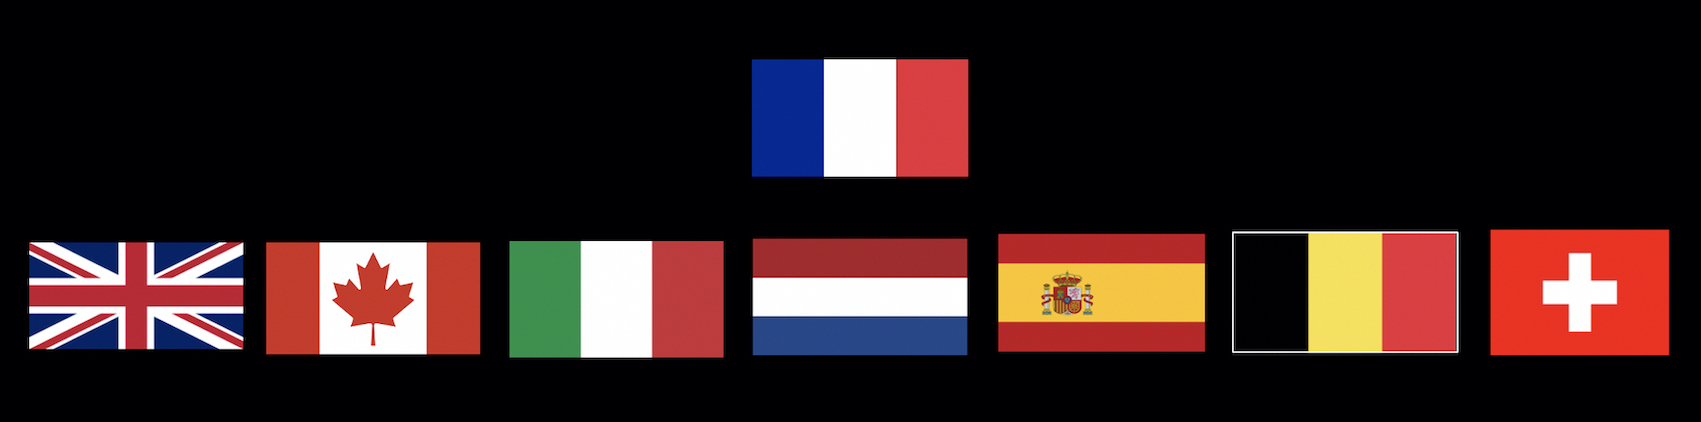 France et étranger - Conseil 360° Eurêka Study